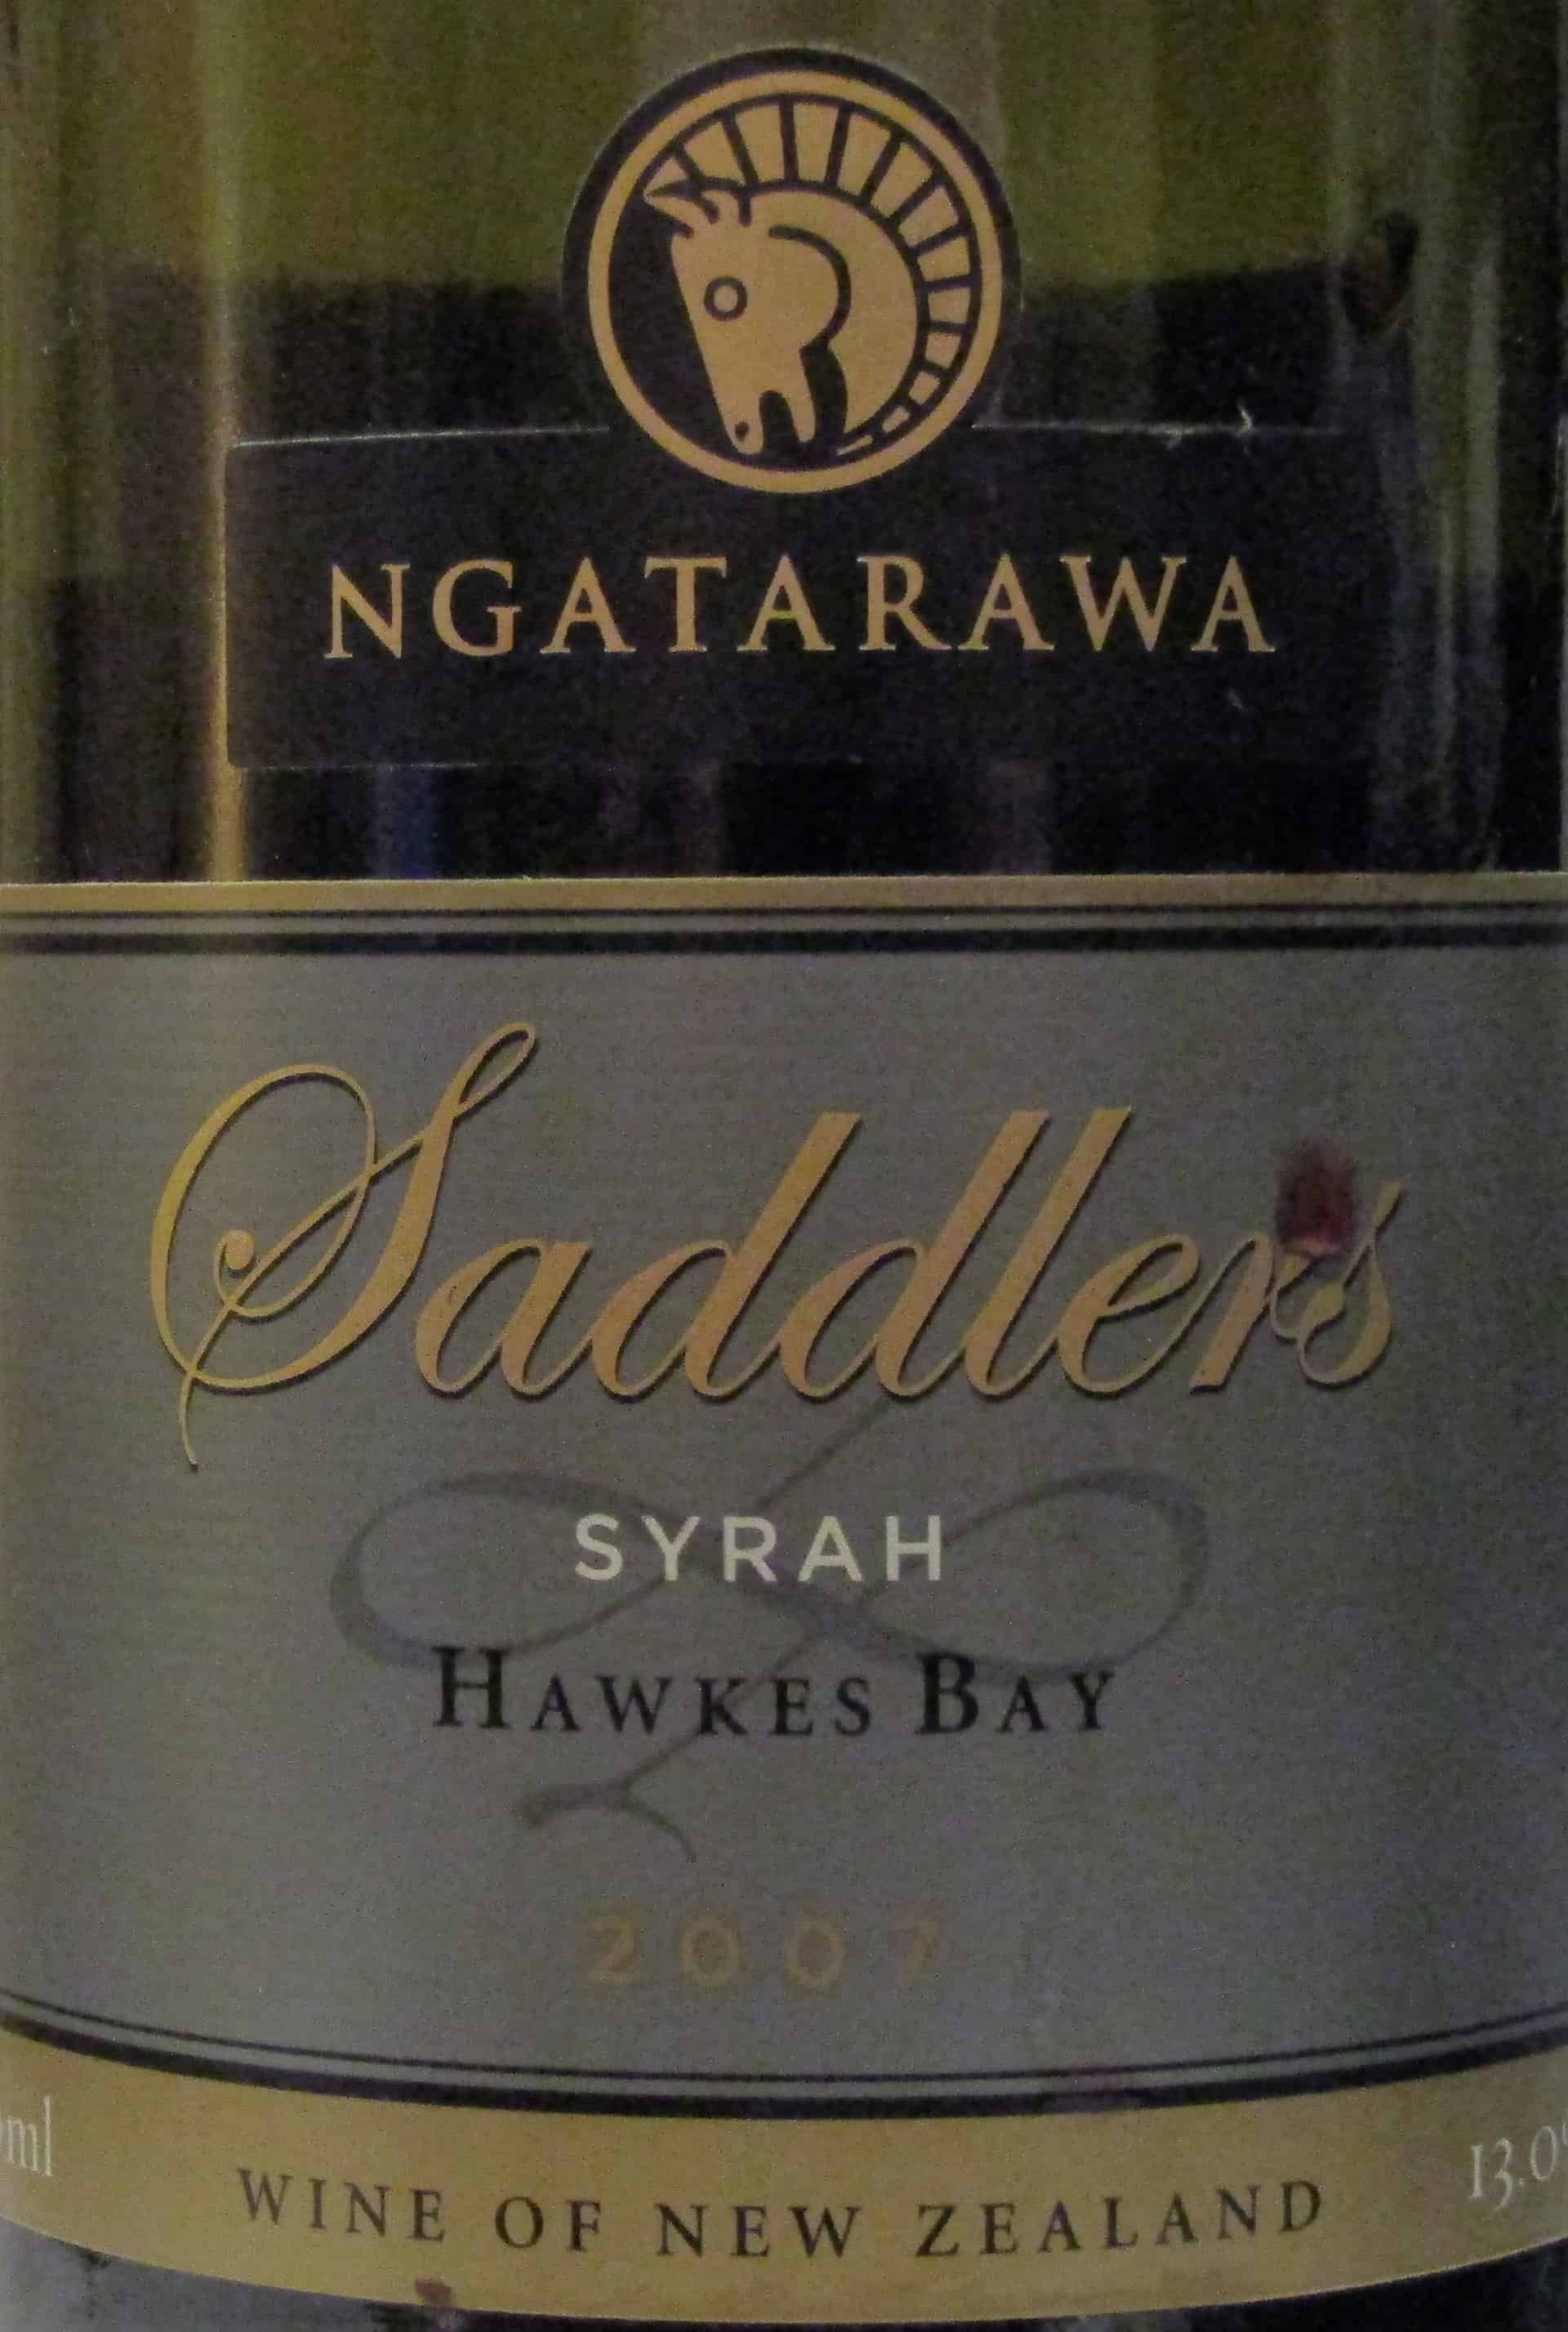 Ngatarawa ‘Saddler’s’ Hawke’s Bay Syrah 2007